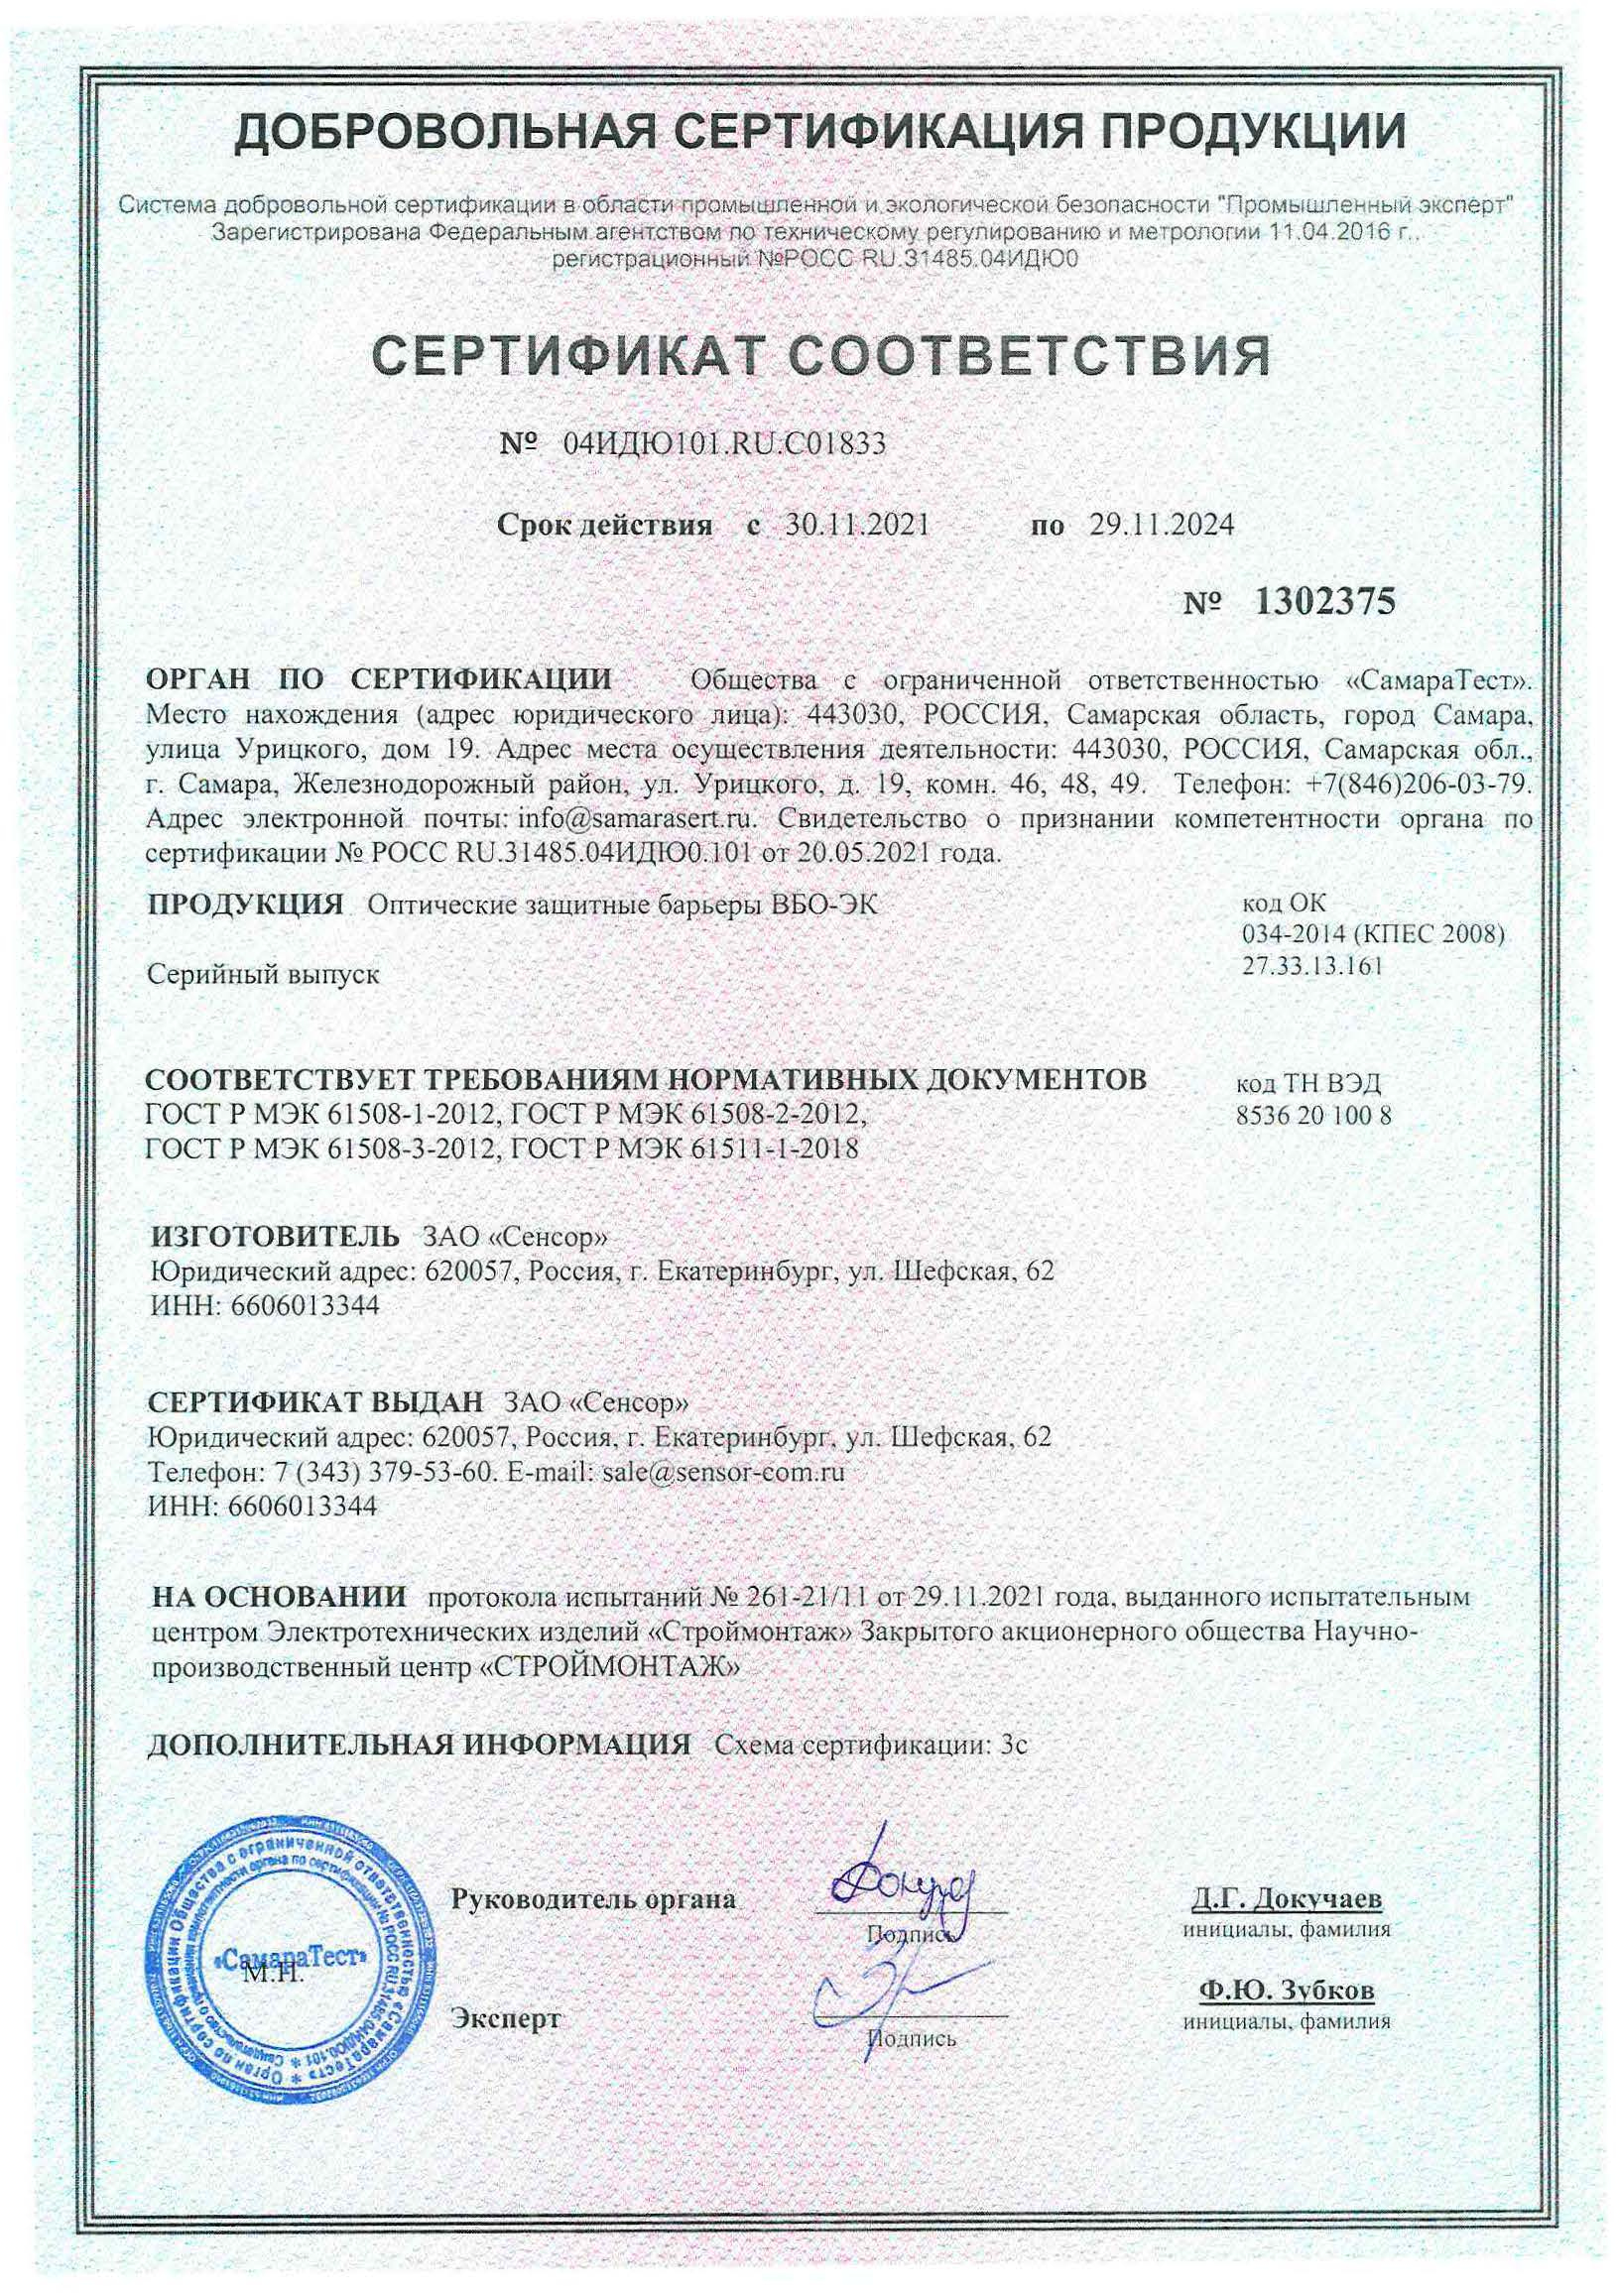 Сертификат функциональной безопасности уровня SIL2